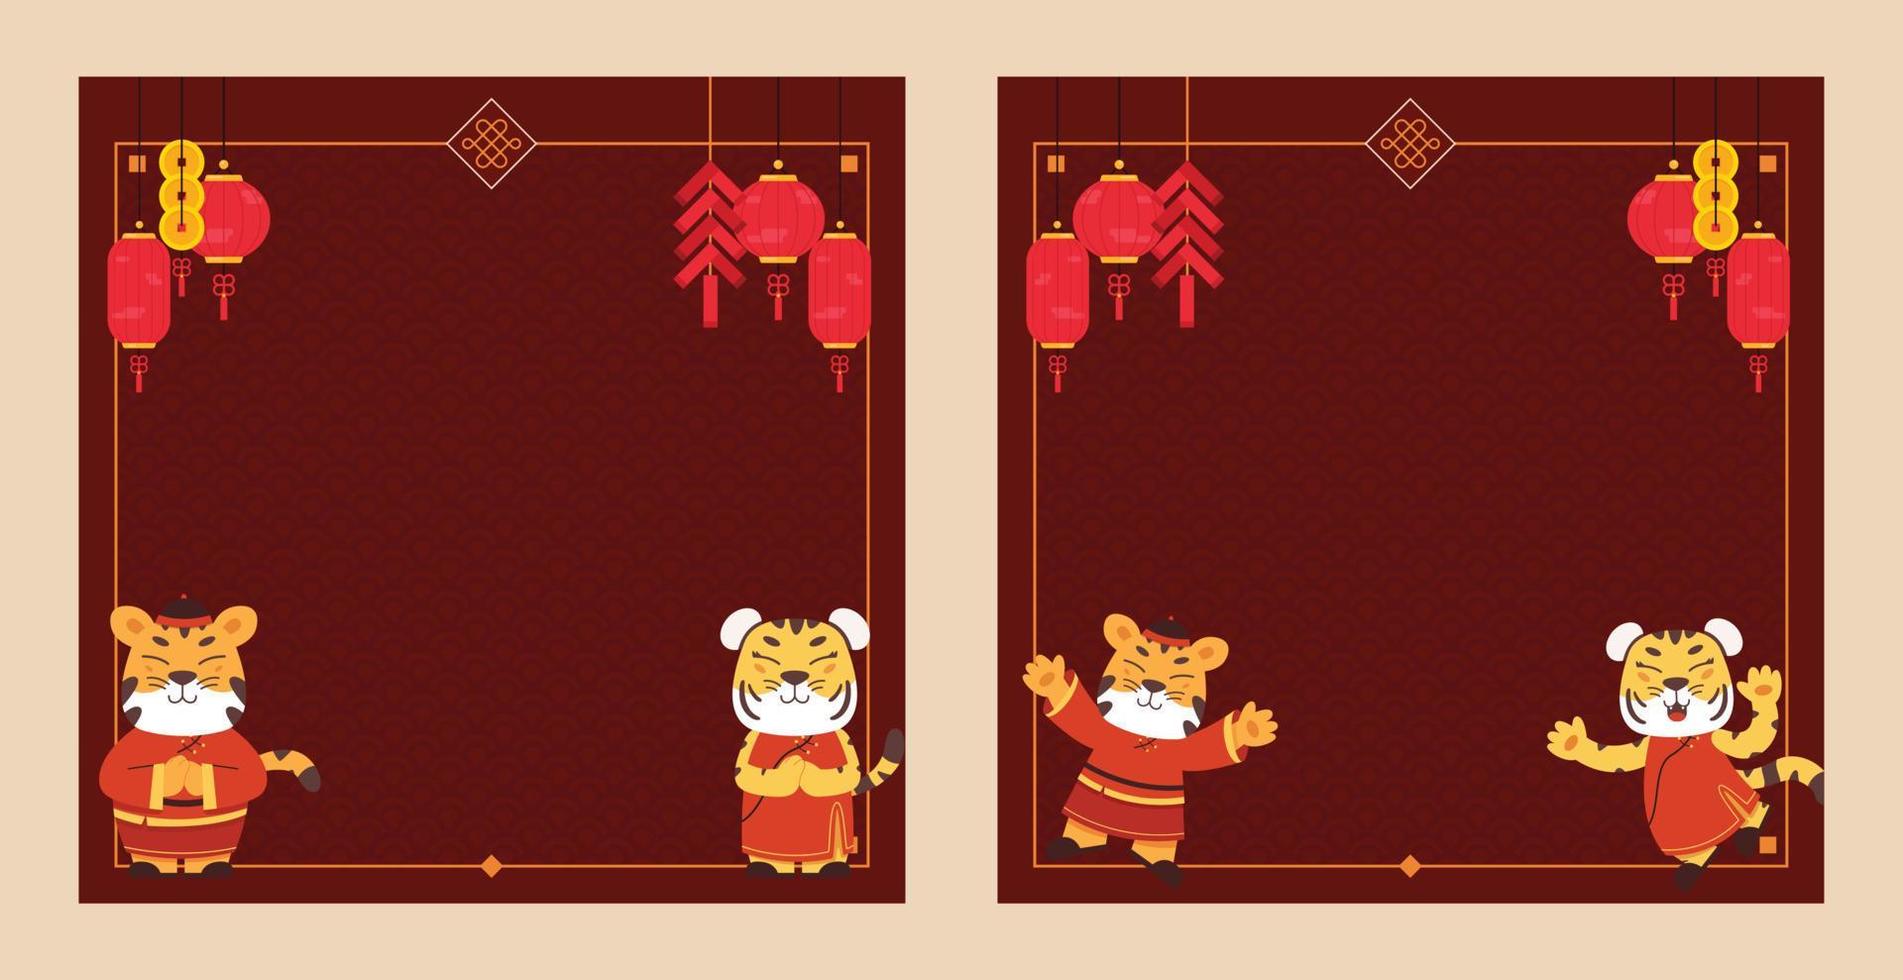 modelo de plano de fundo do ano novo chinês 2022 para cartão de felicitações, pôster, banner do site com ilustração de tigre, lanterna, fogo de artifício, carimbo e elemento chinês vetor